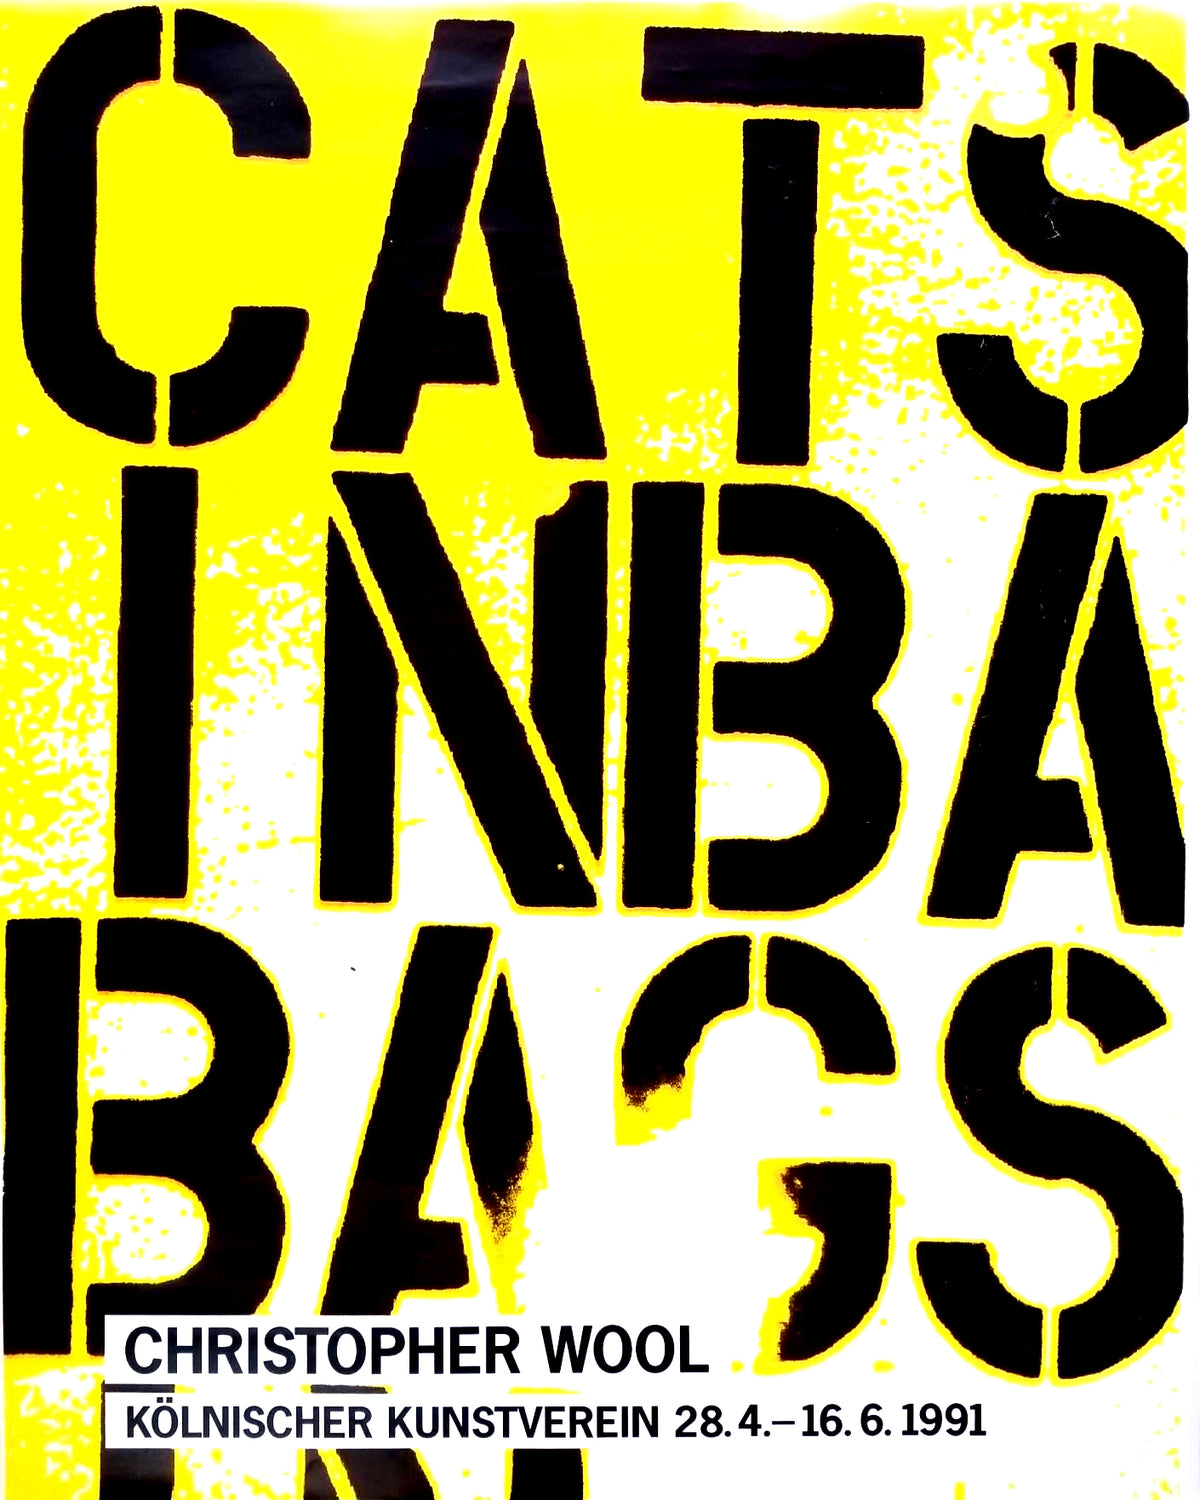 Christopher Wool,Kölnischer Kunstverein (Cats in Bags, Bags in River)